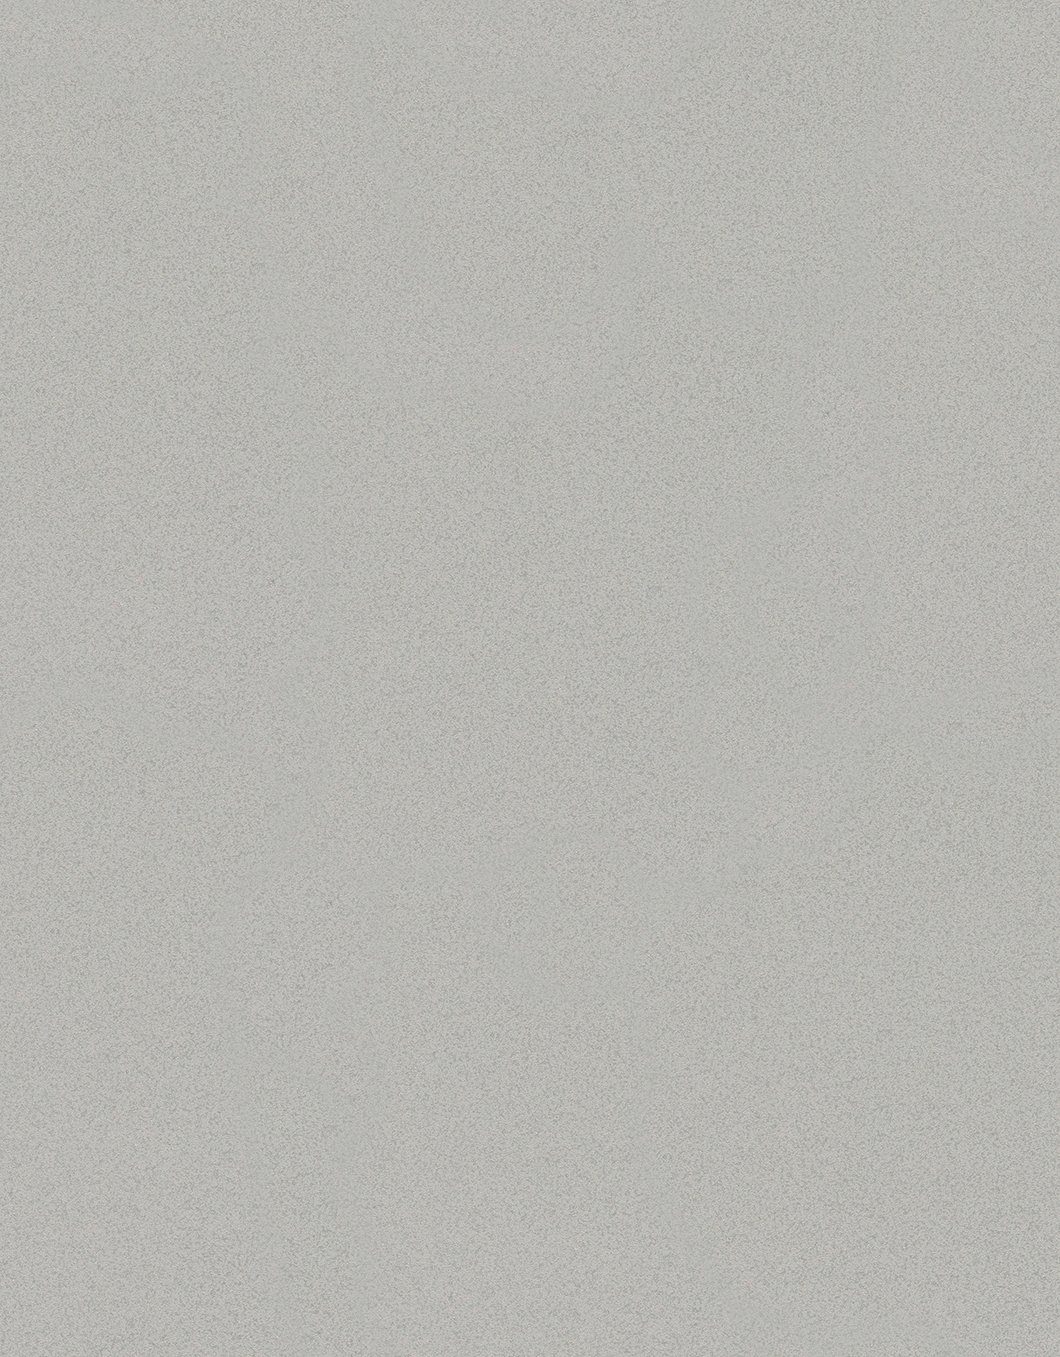 SCHÖNER WOHNEN-Kollektion beige 10,05 Meter 0,53 Vliestapete, x gemustert